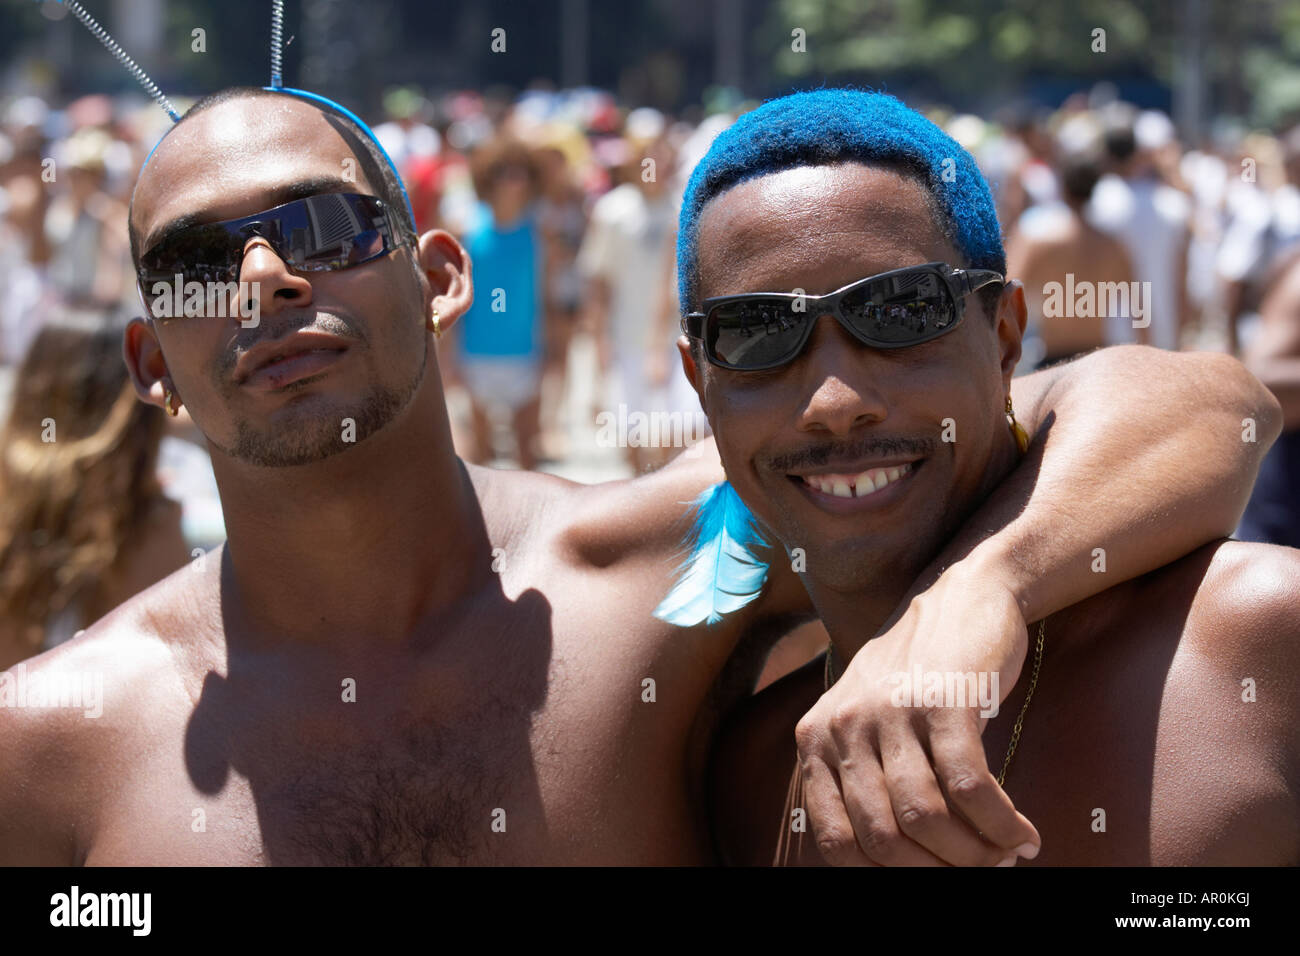 Deux fêtards s'pendant le carnaval à Rio de Janeiro Brésil Banque D'Images